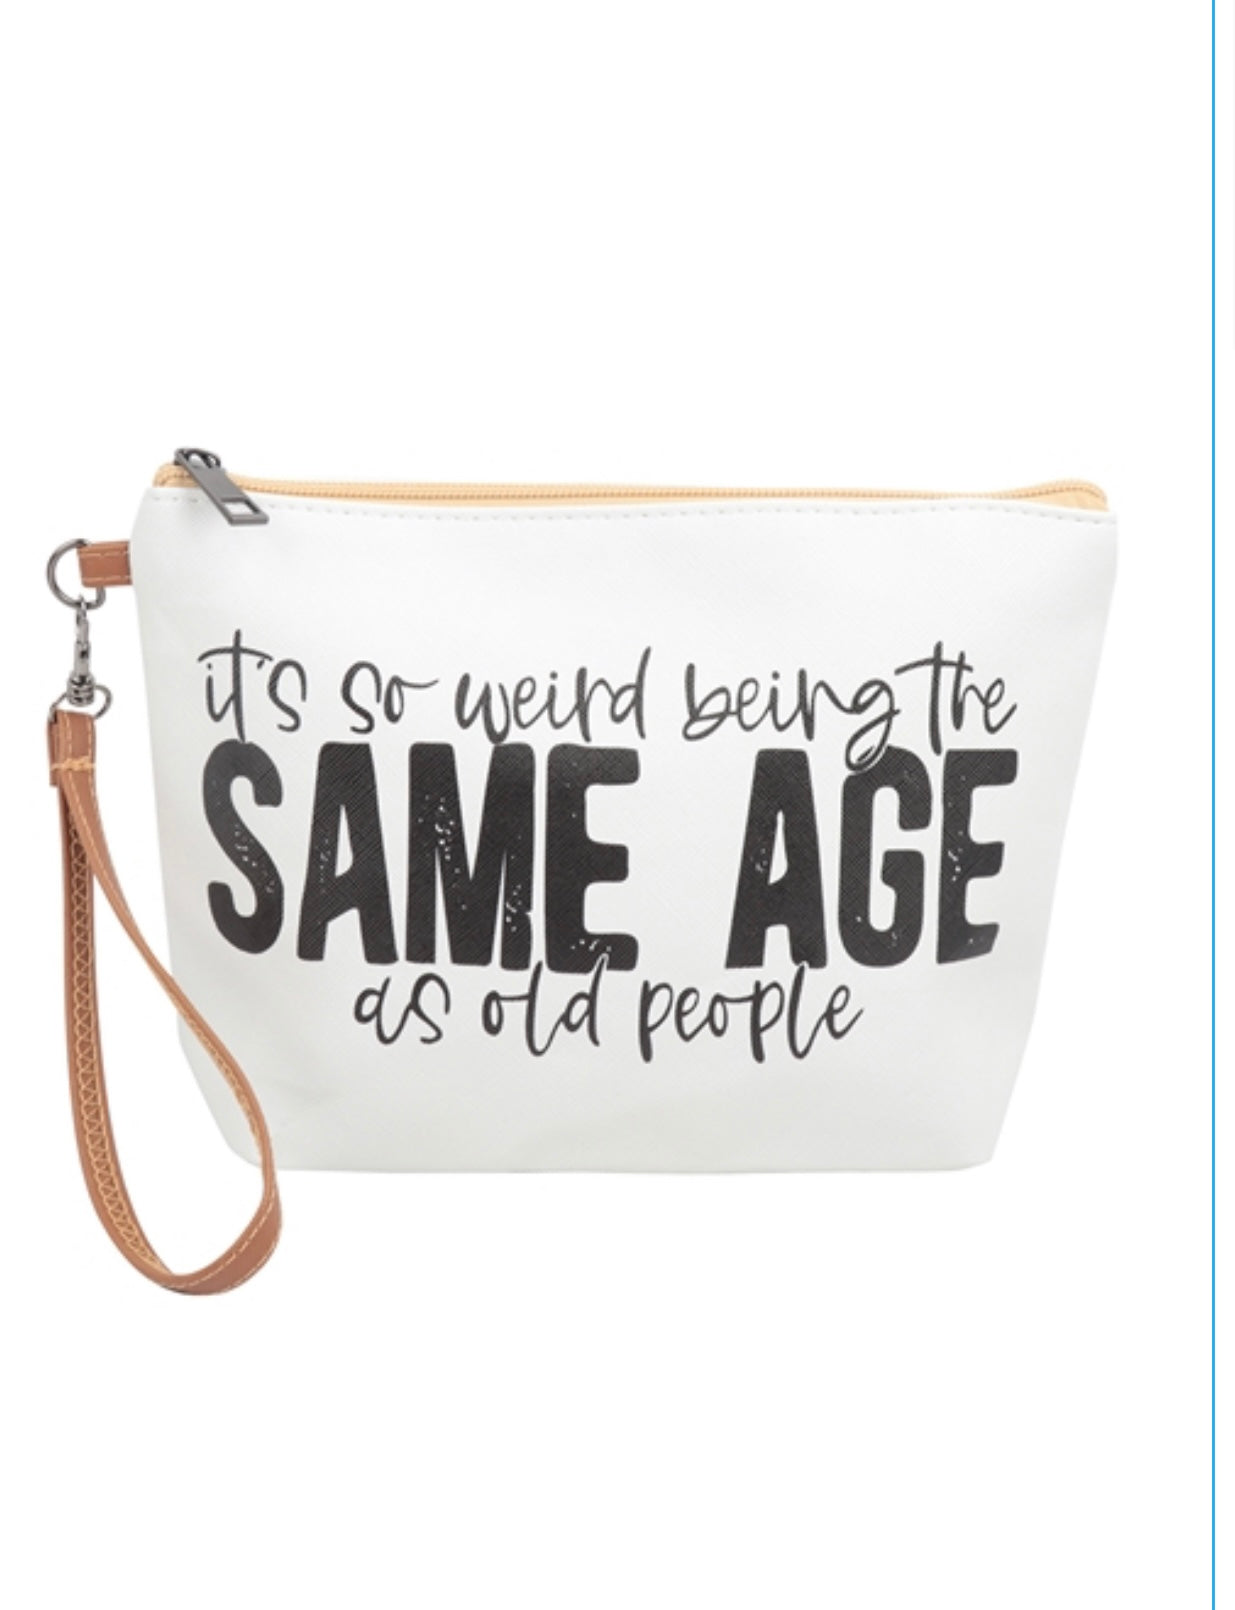 Same age bag